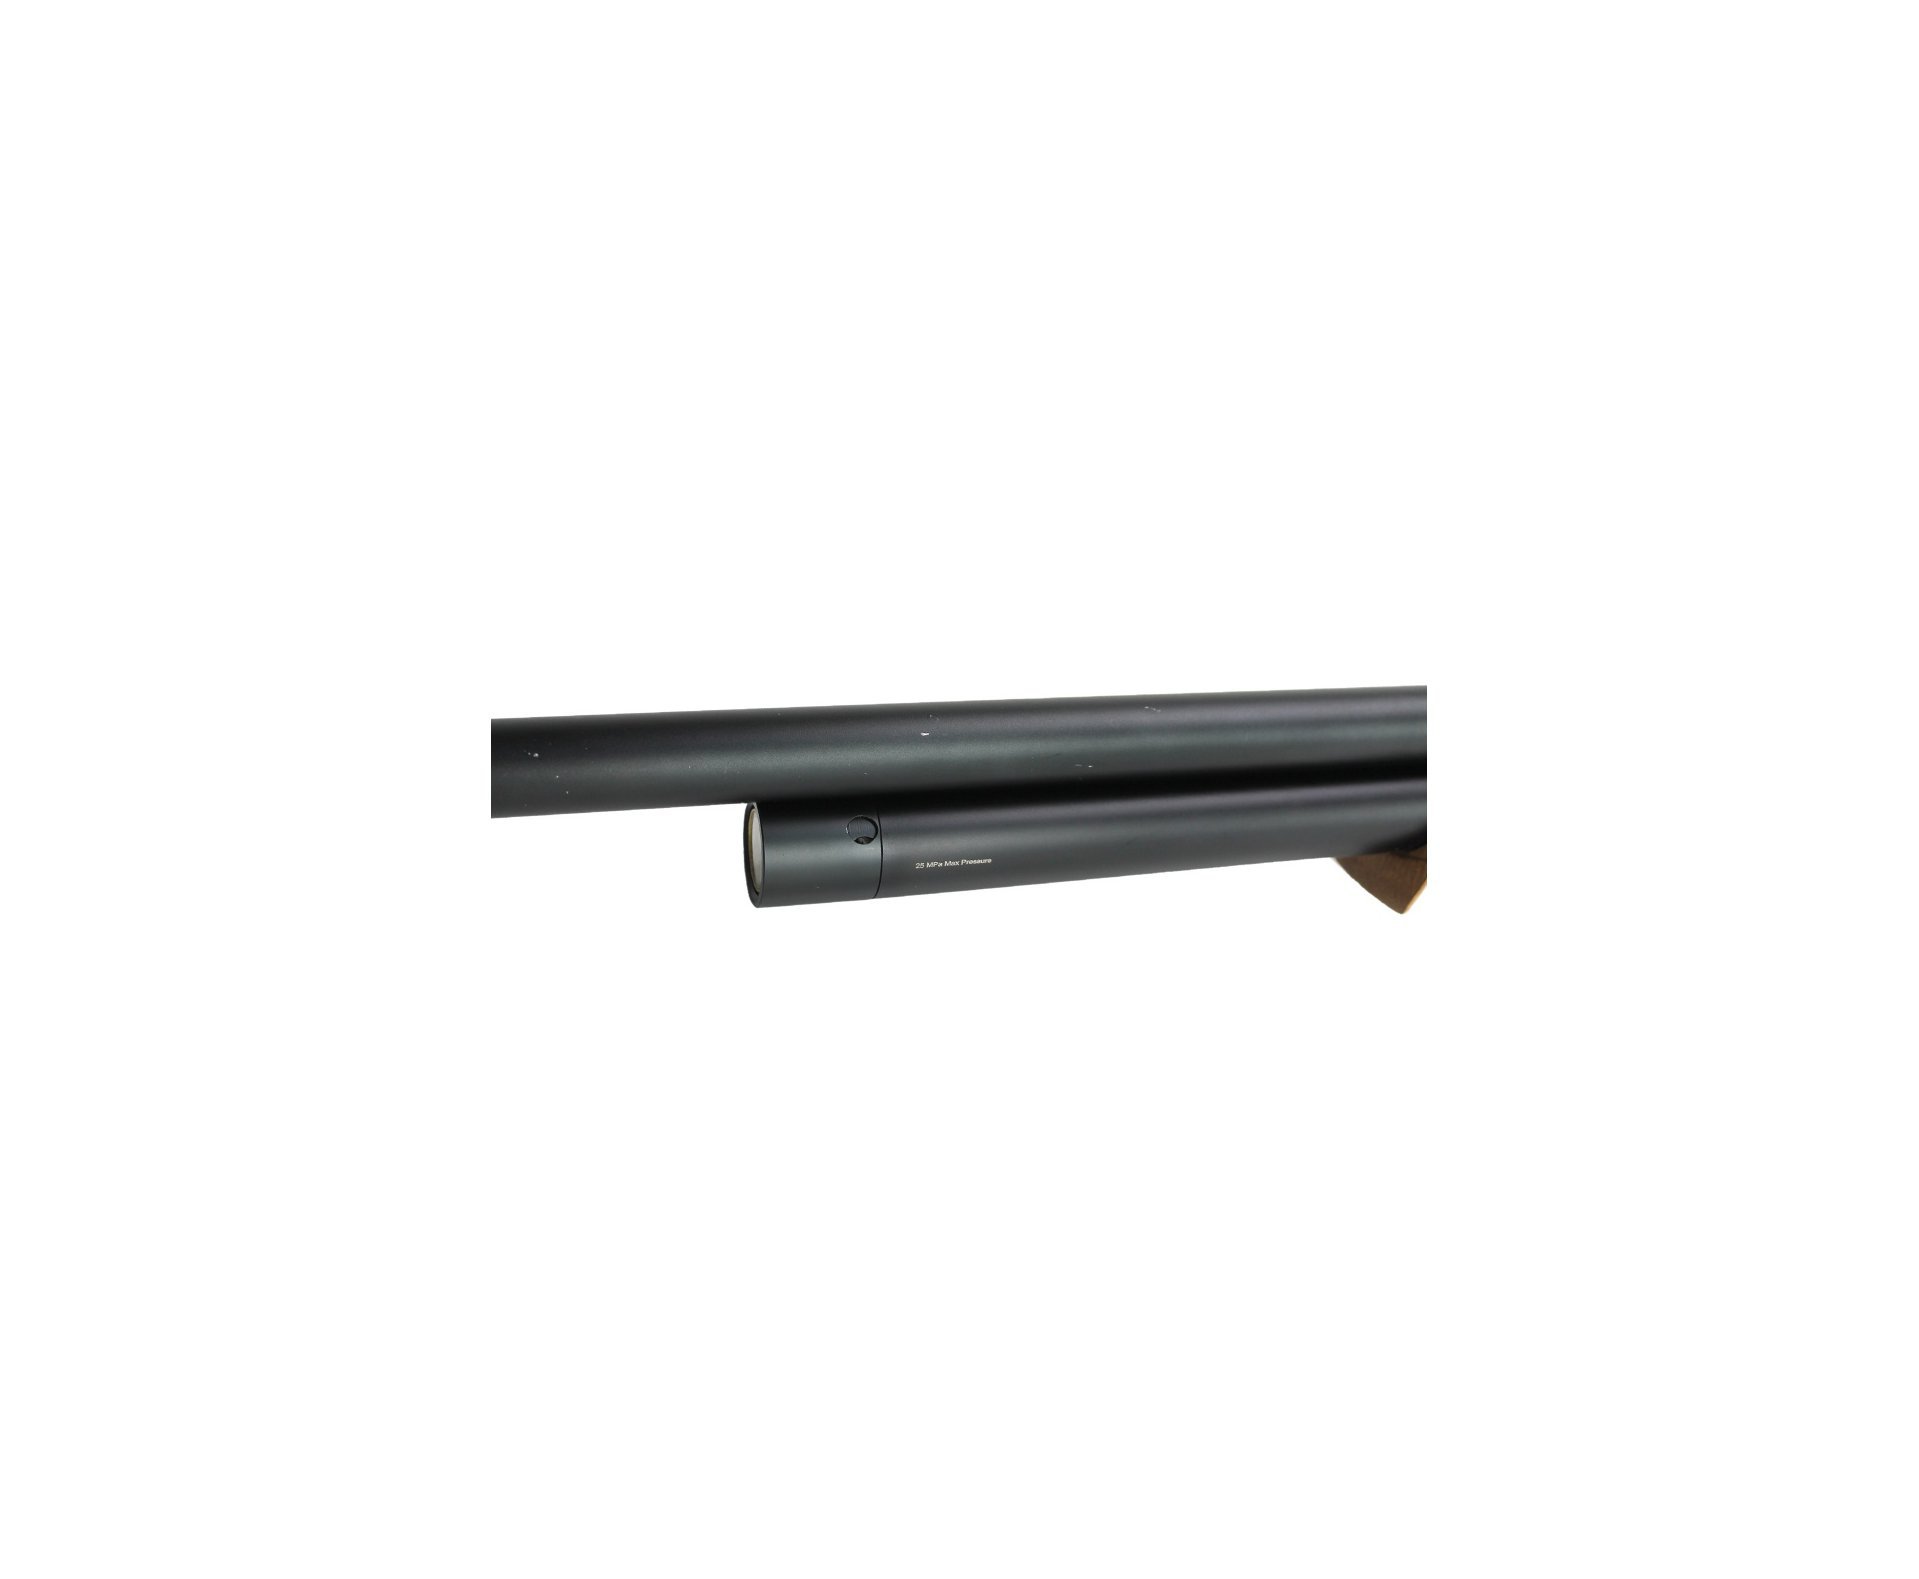 Carabina De Pressão PCP Artemis M22 Uller 6.35mm FXR - Mostruário